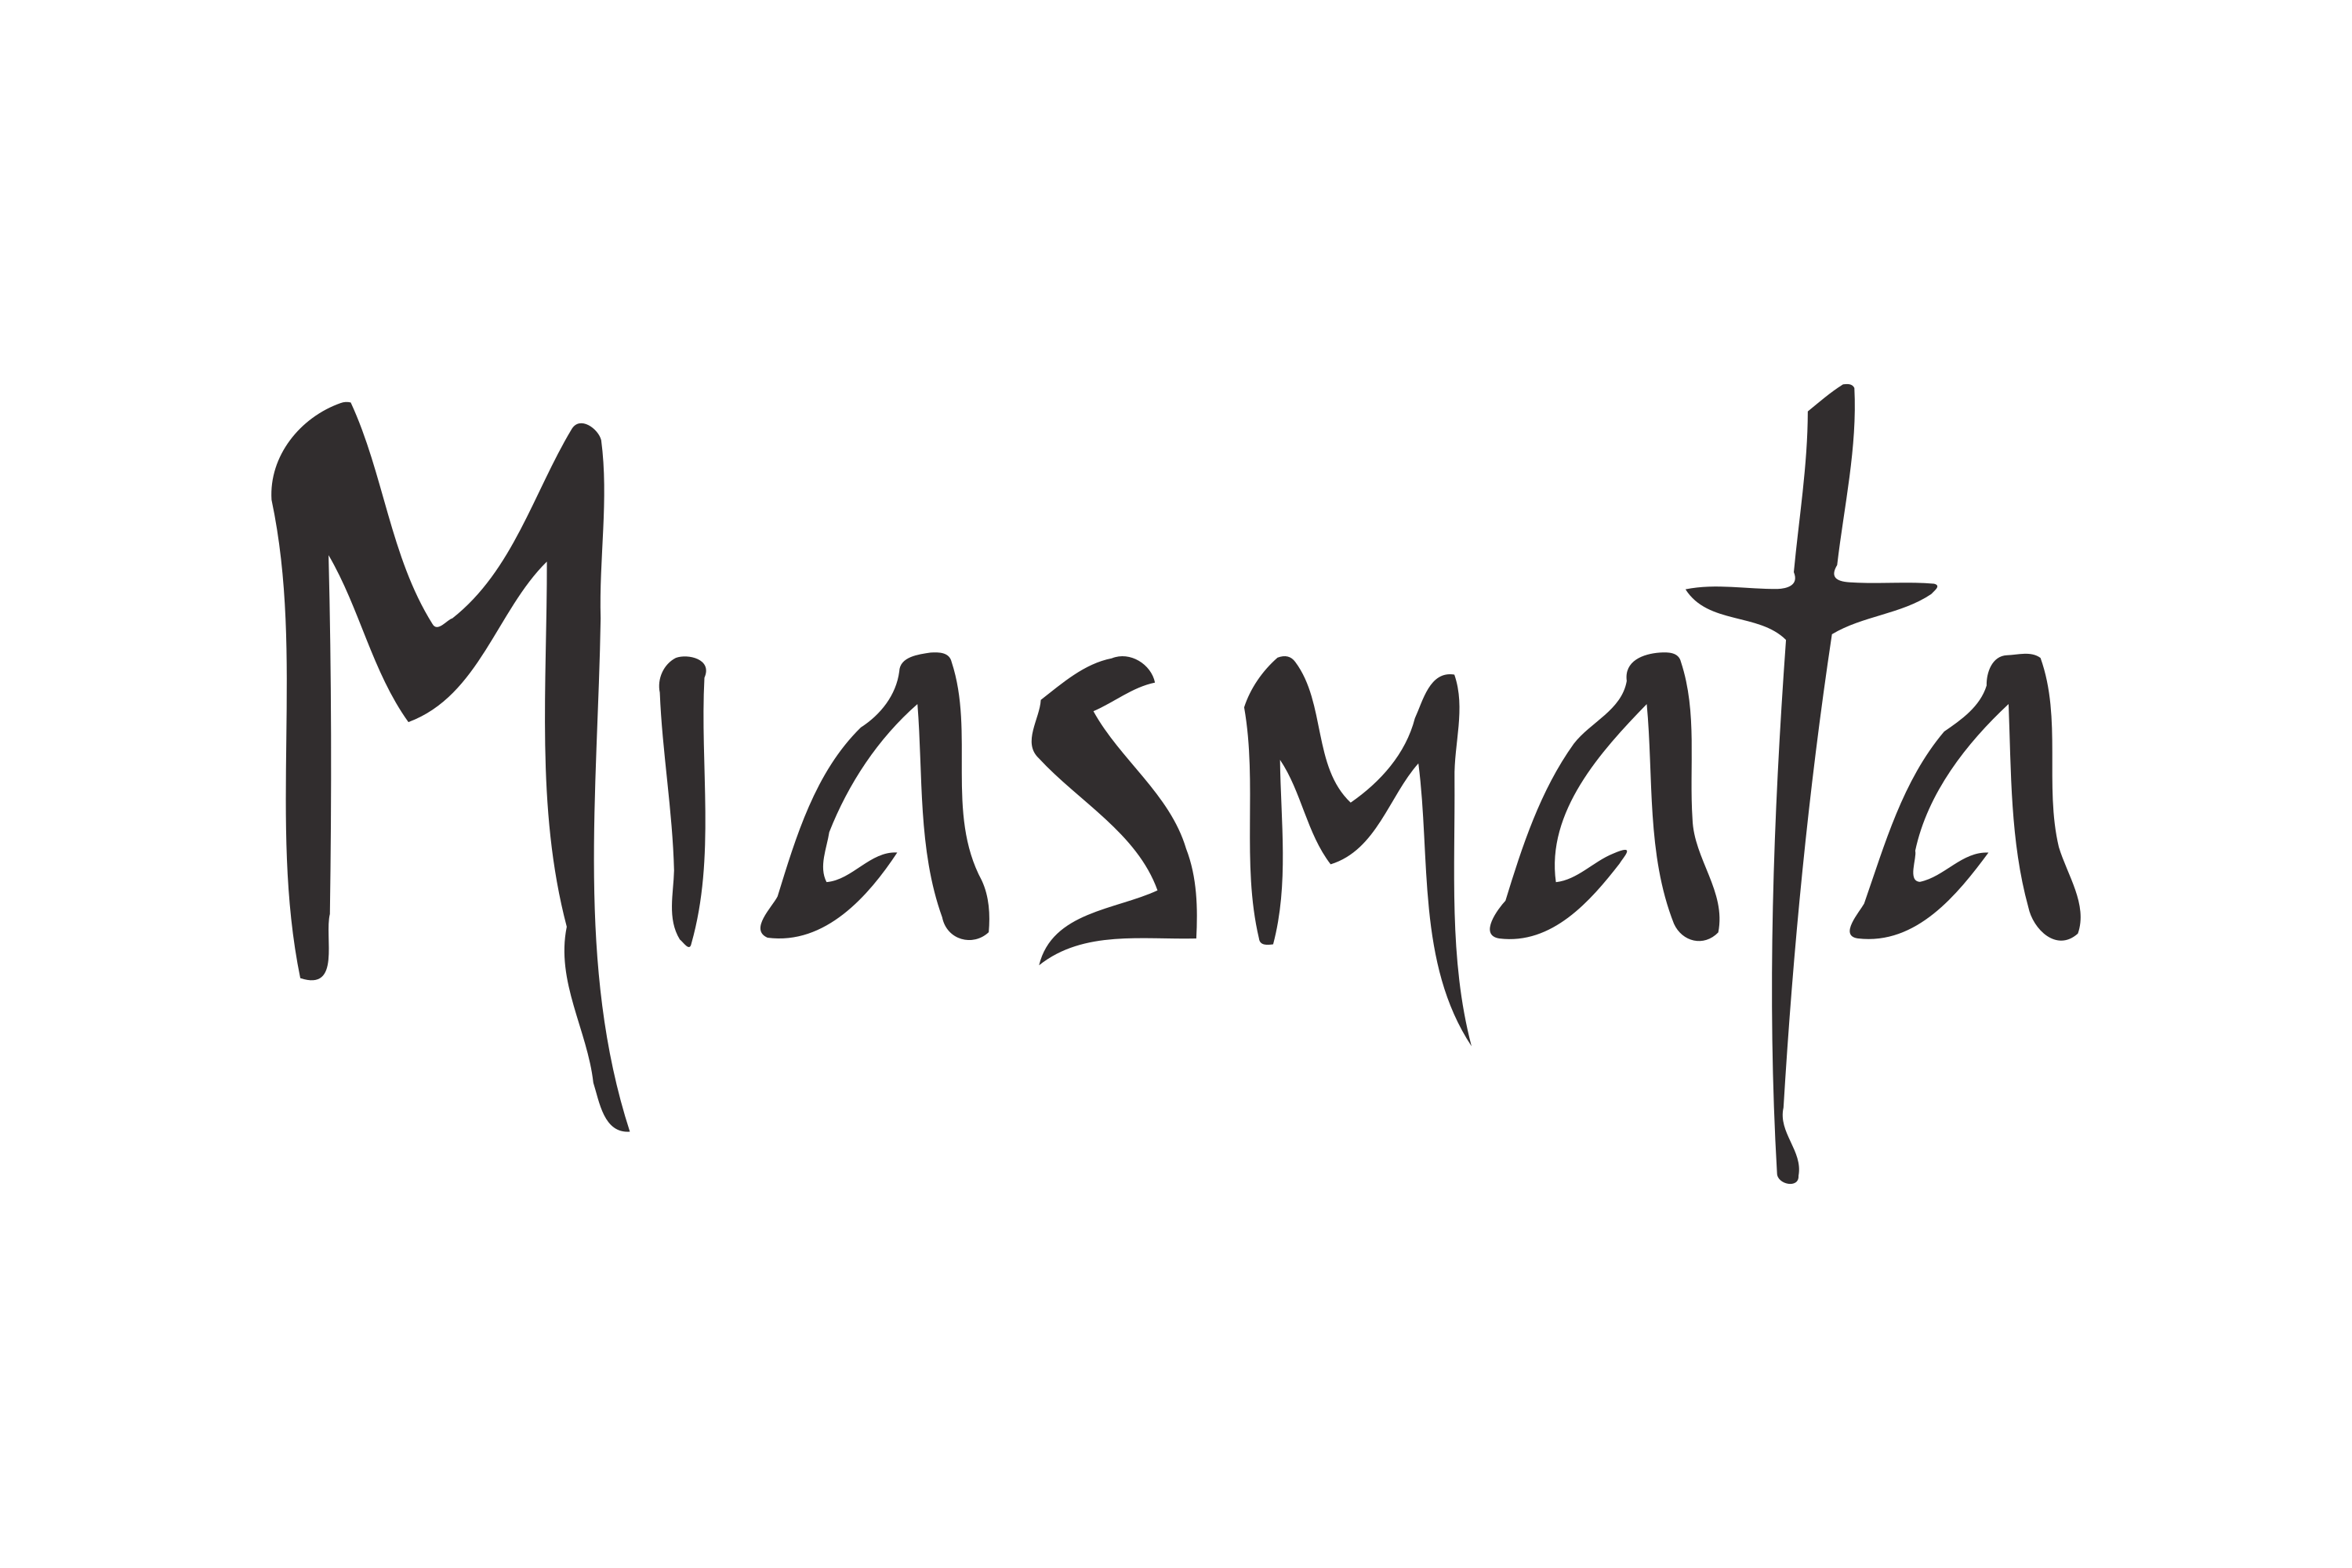 Miasmata Logo